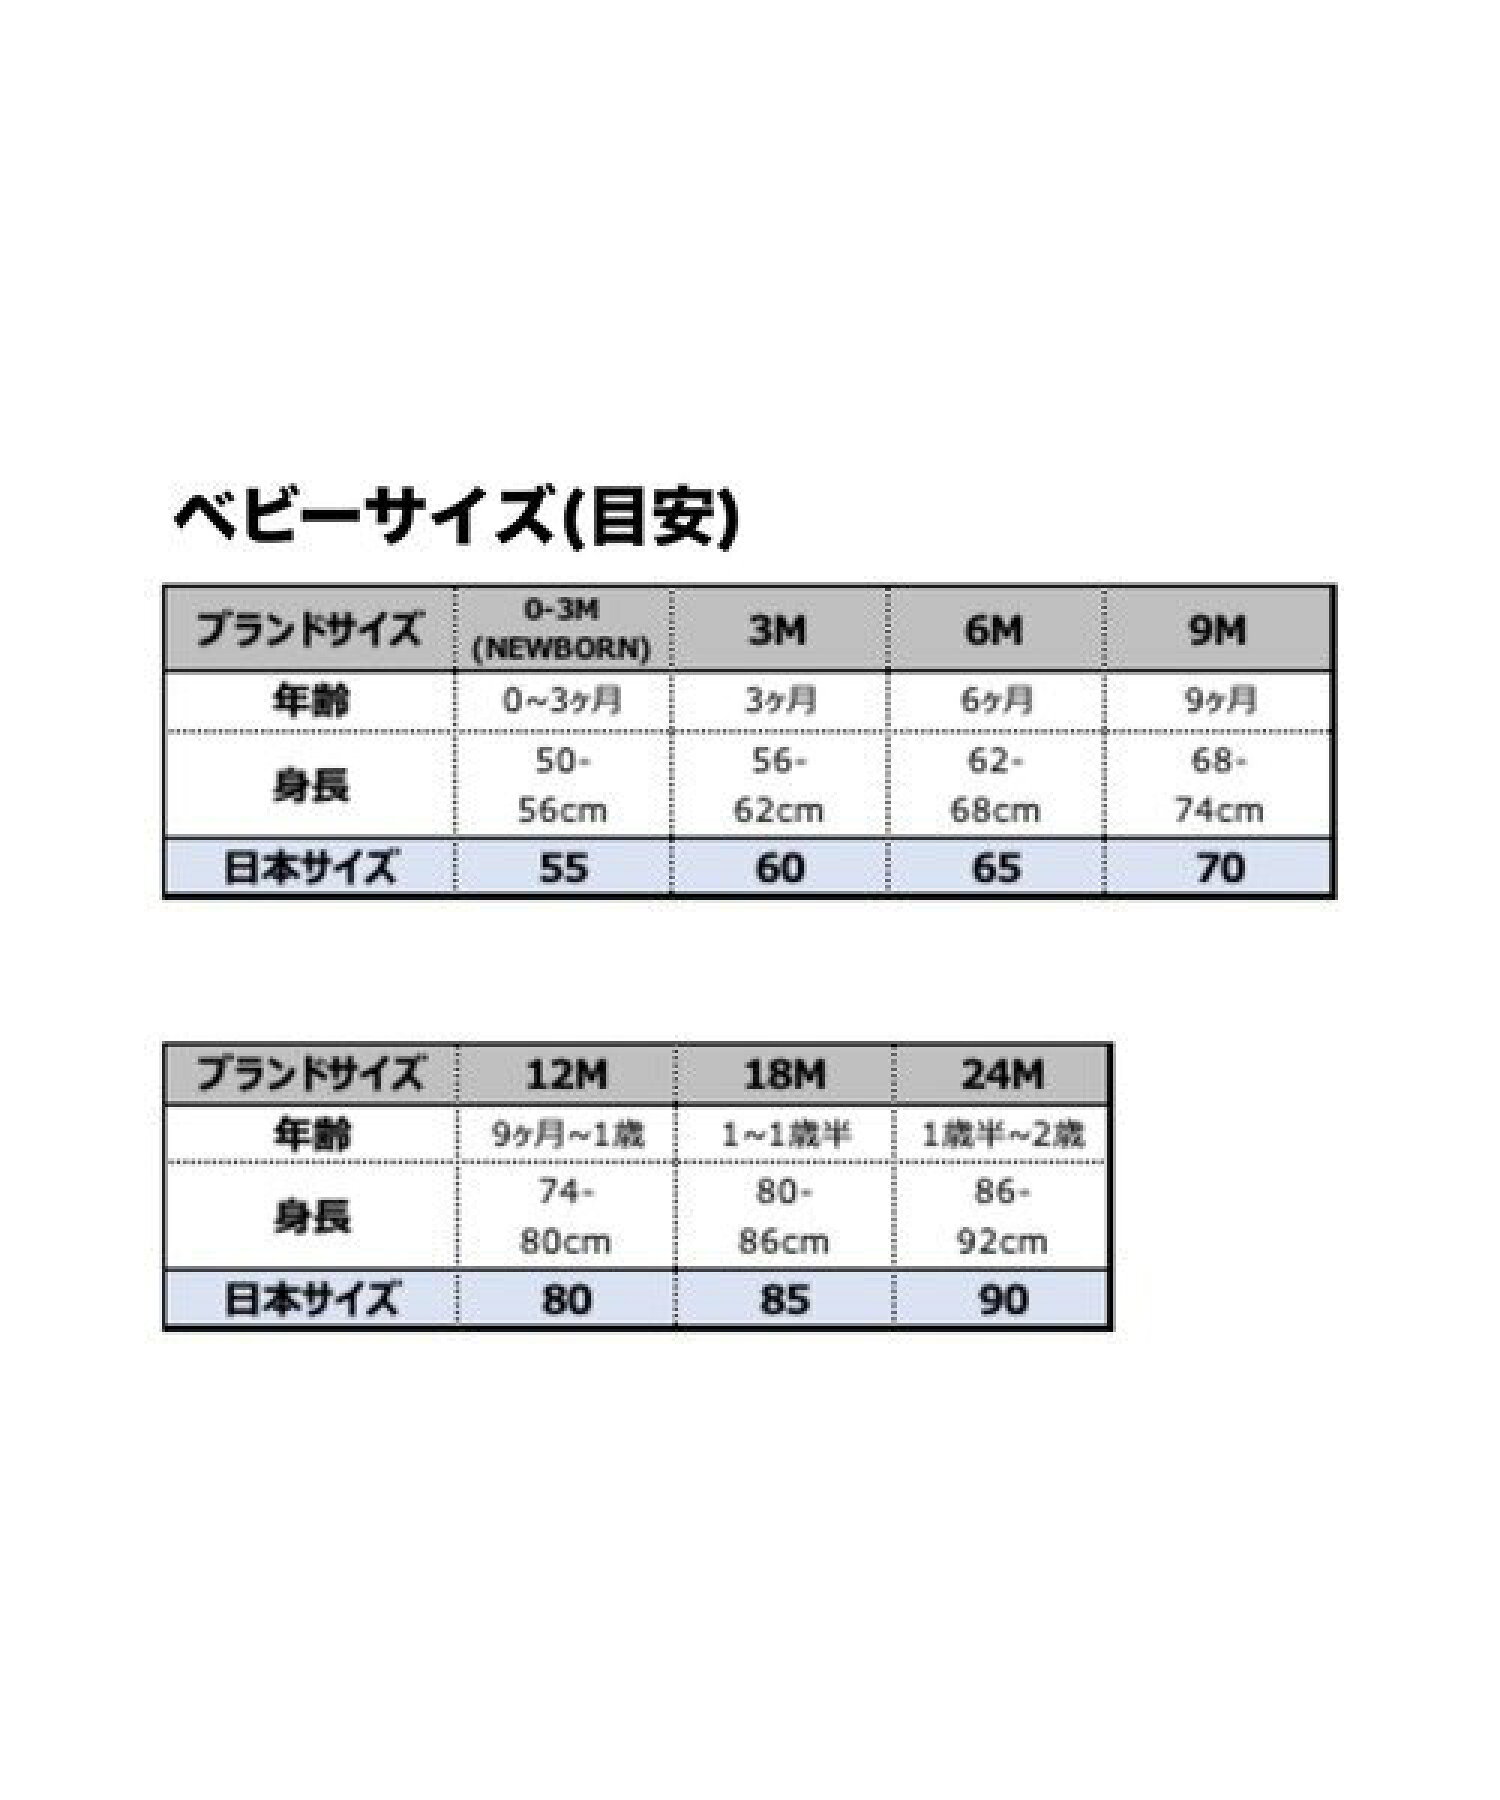 ベビー(0-6M) セット商品 NIKE(ナイキ) HEADBAND, BODYSUIT & BIB 3P